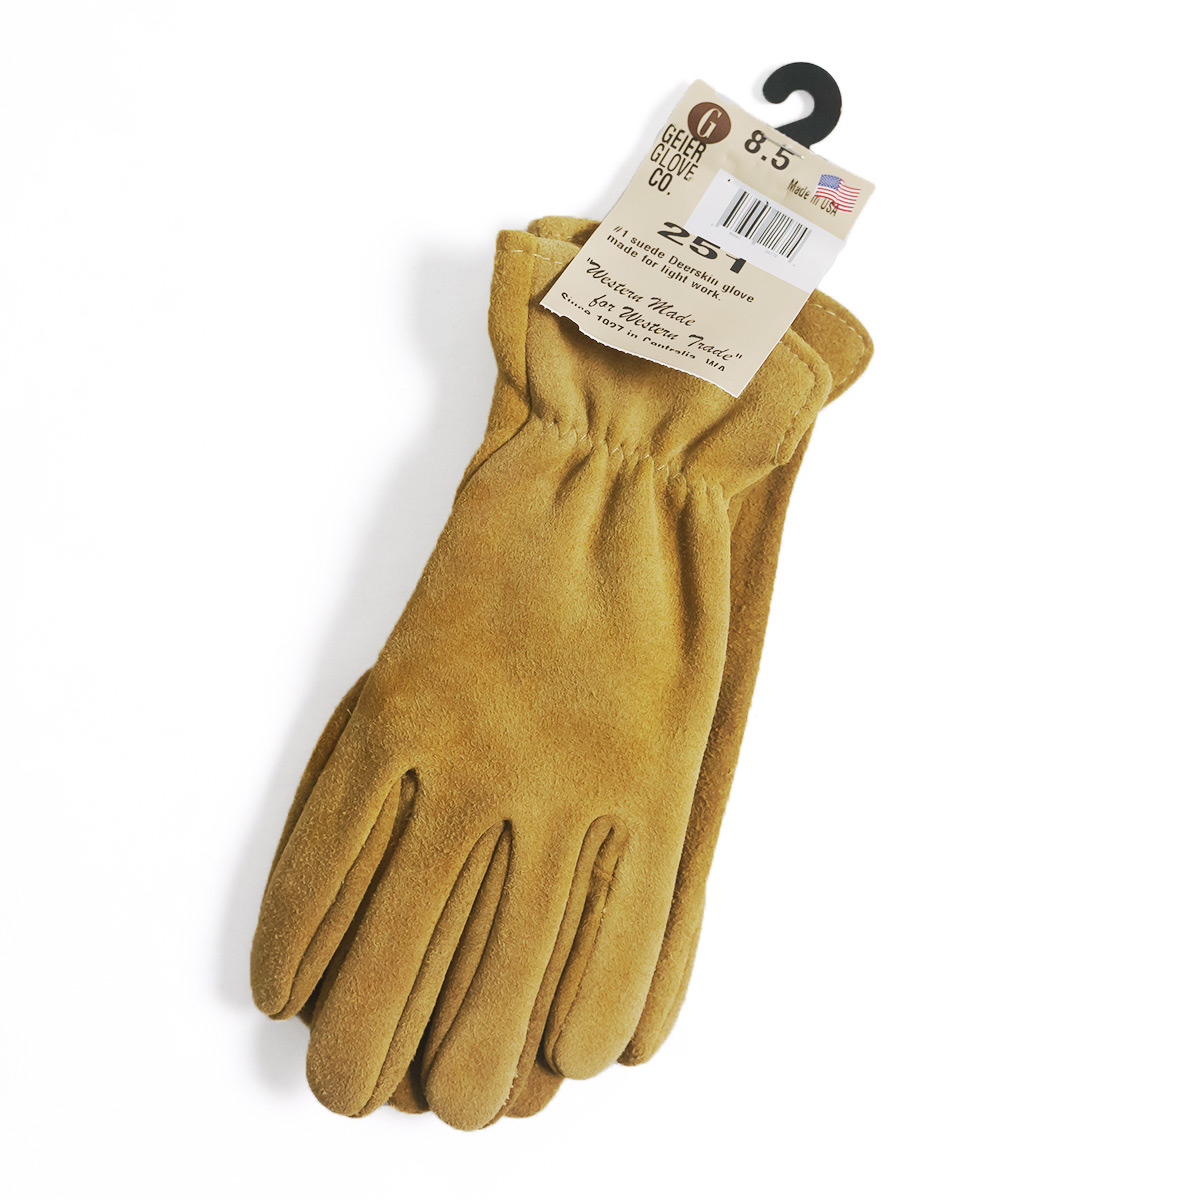 ガイヤーグローブ GEIER GLOVE #251 ディアスキン スエードグローブ カーキ 米国製 アメリカ製 Deerskin Suede  Glove レザーグローブ 革手袋